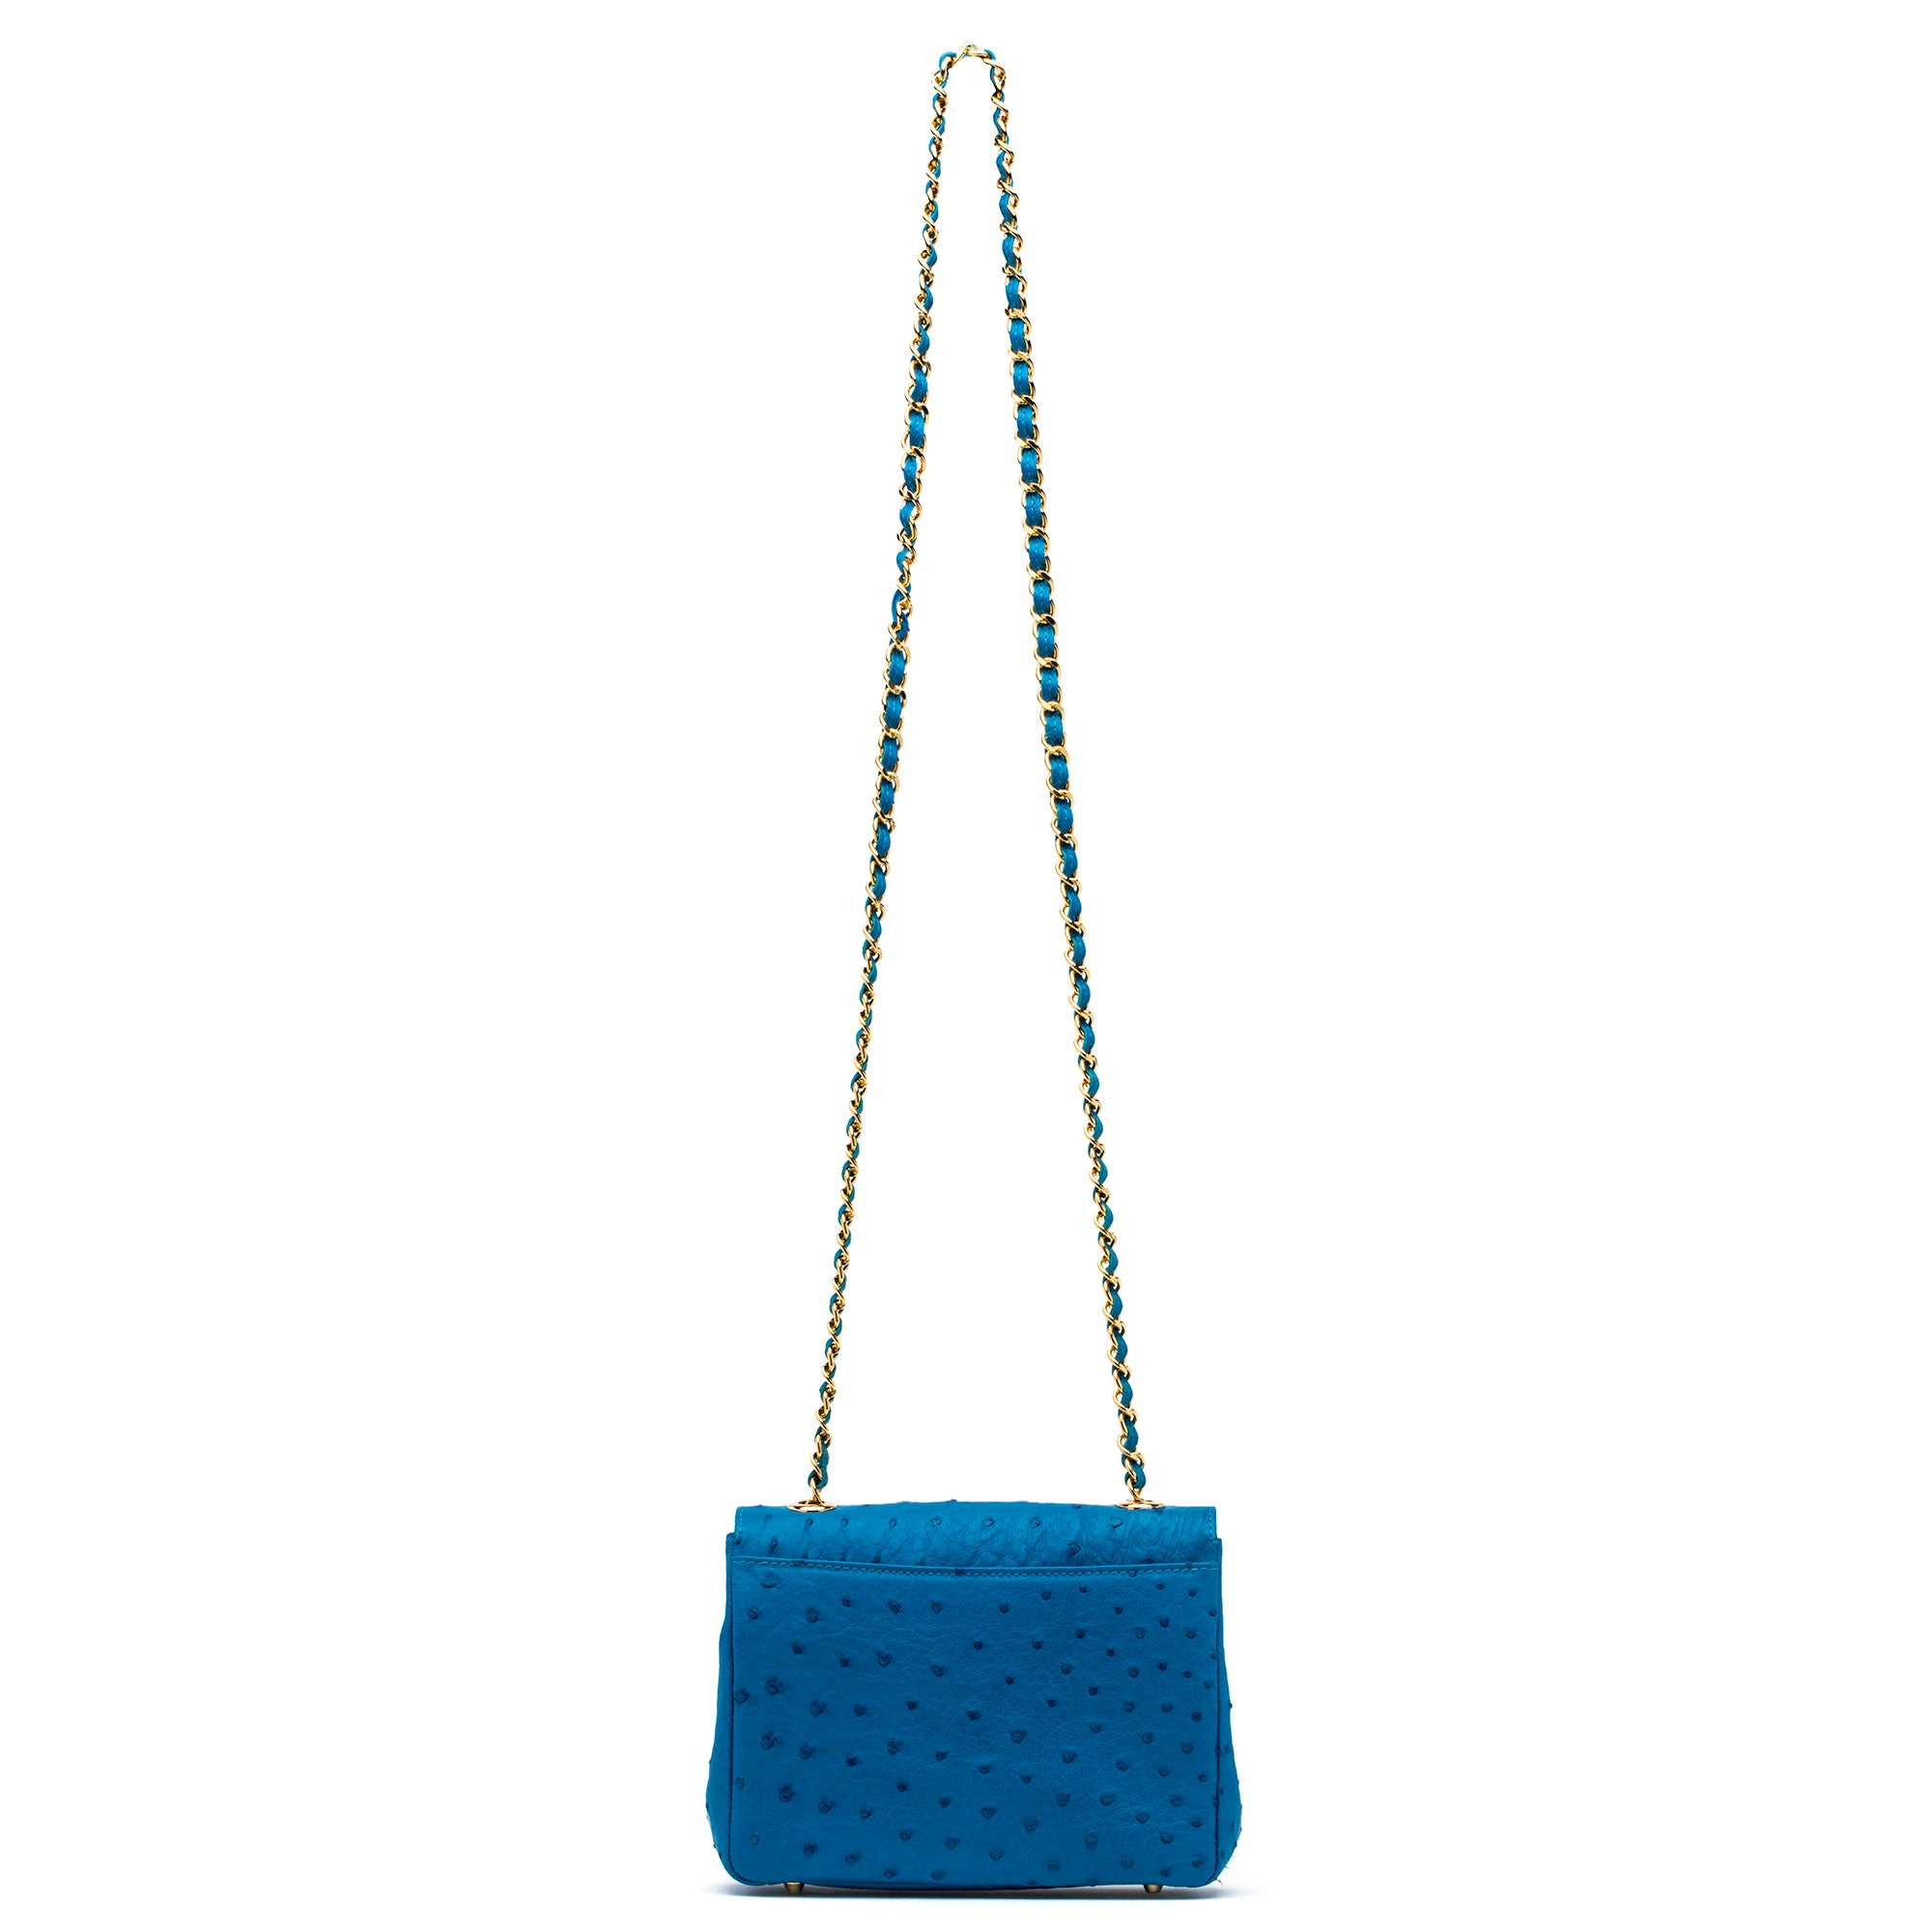 Medium Chain Bag in Blue Ostrich